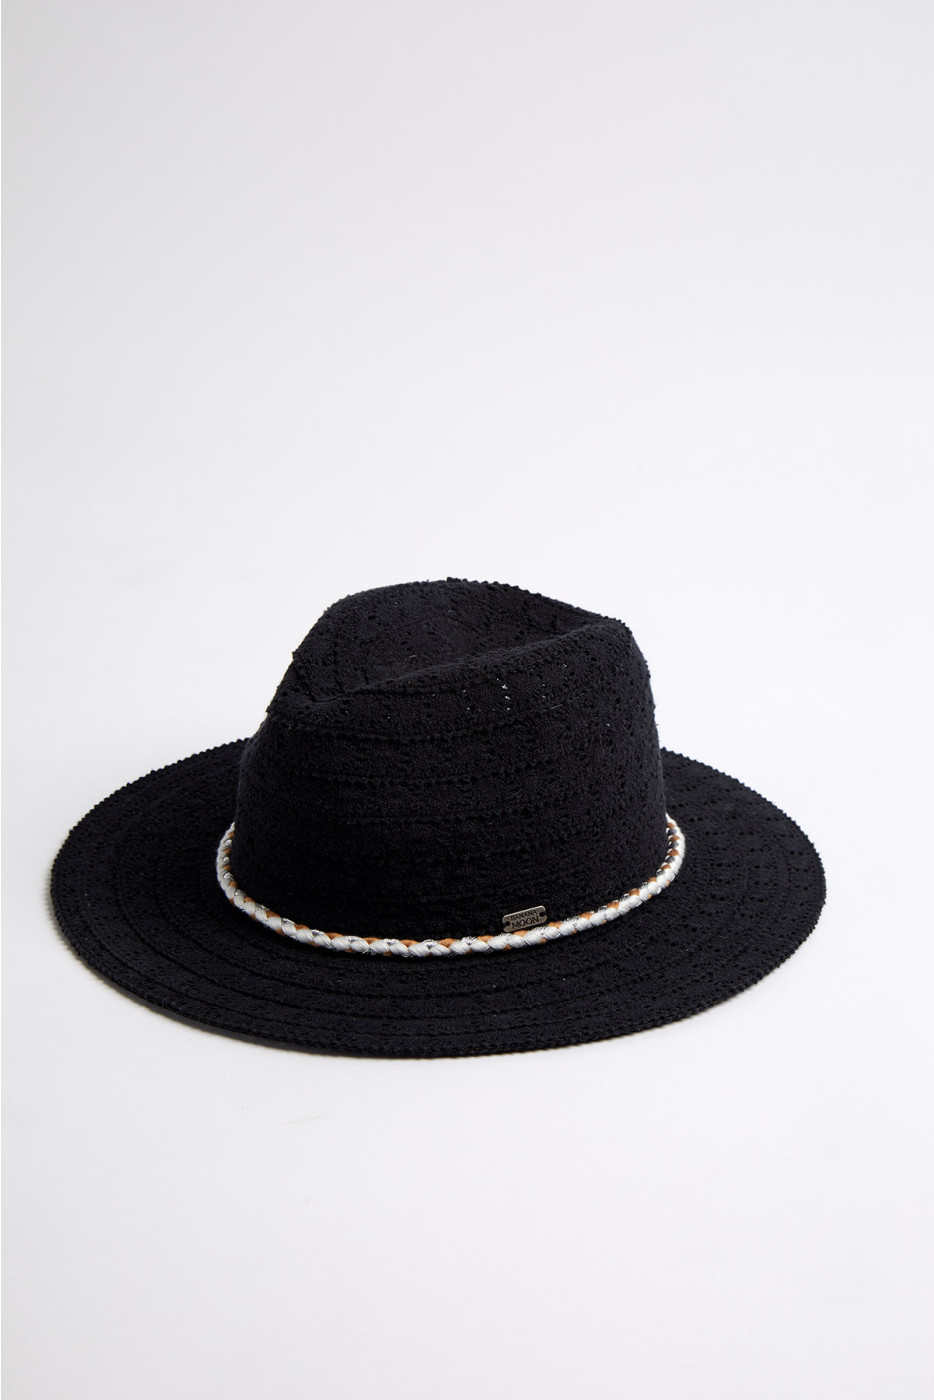 Avila Hatsy black hat